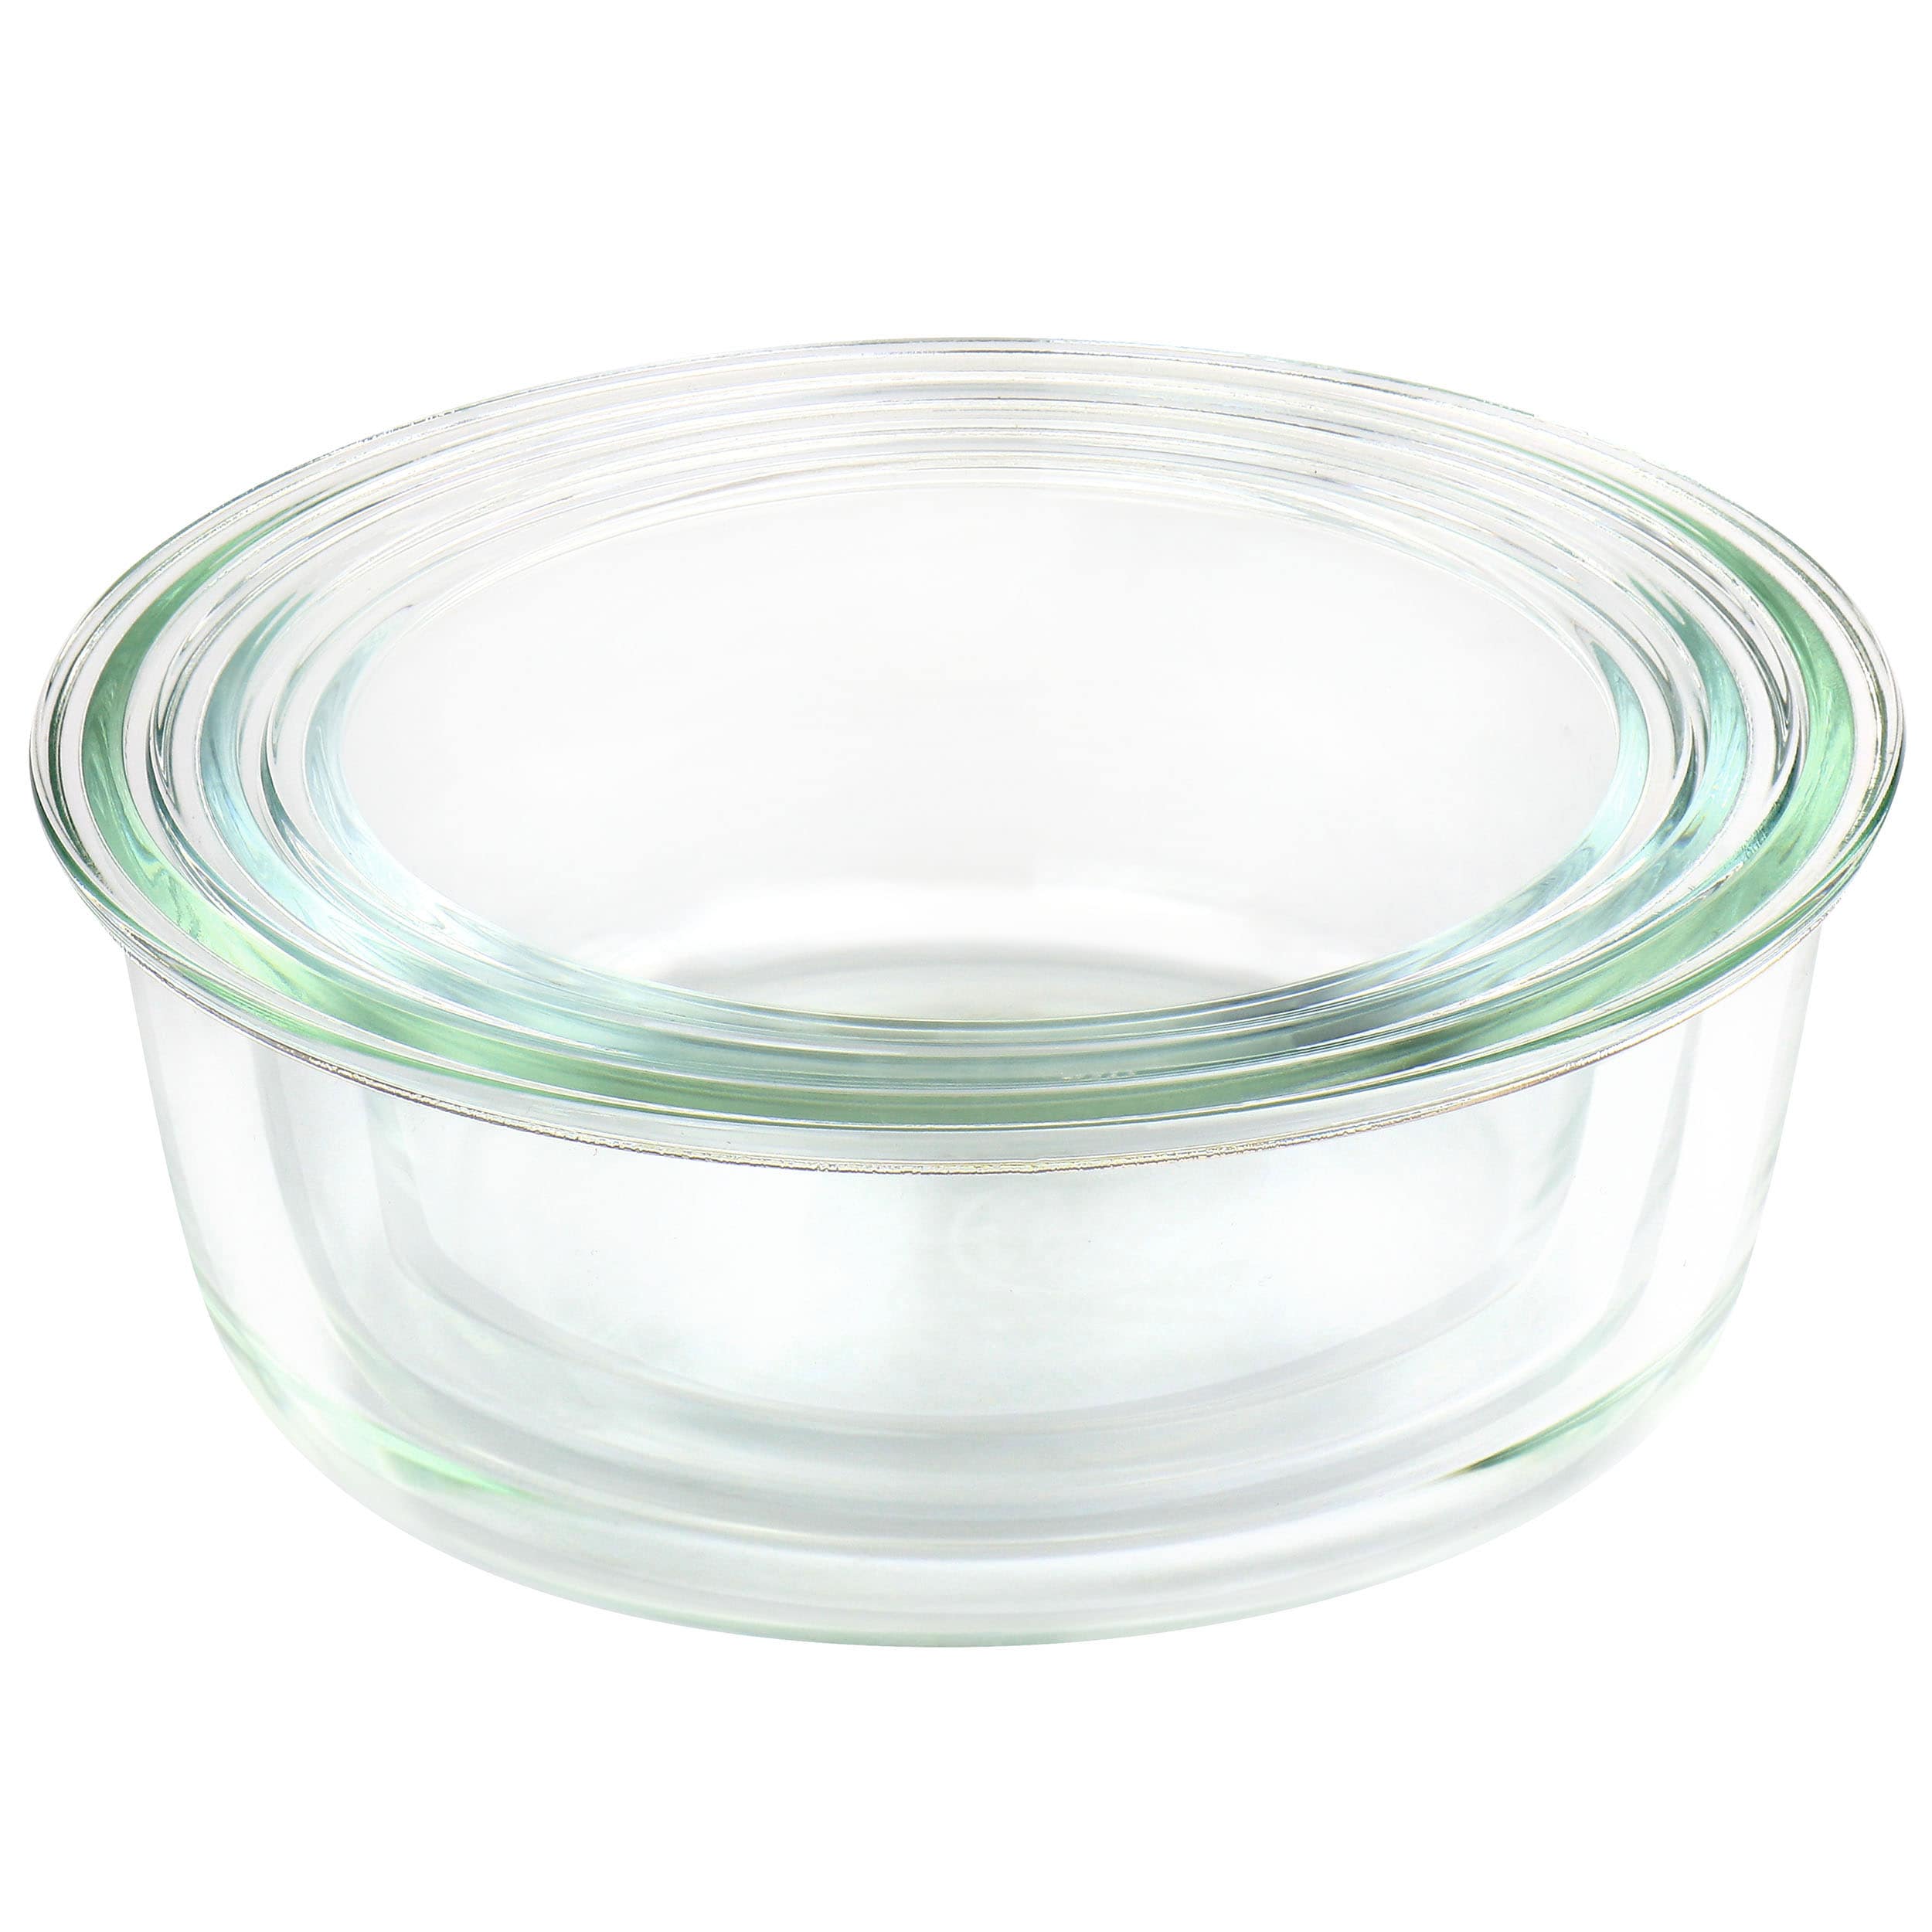 Martha Stewart Collection 9.6-Cup Rectangular Glass Food Storage